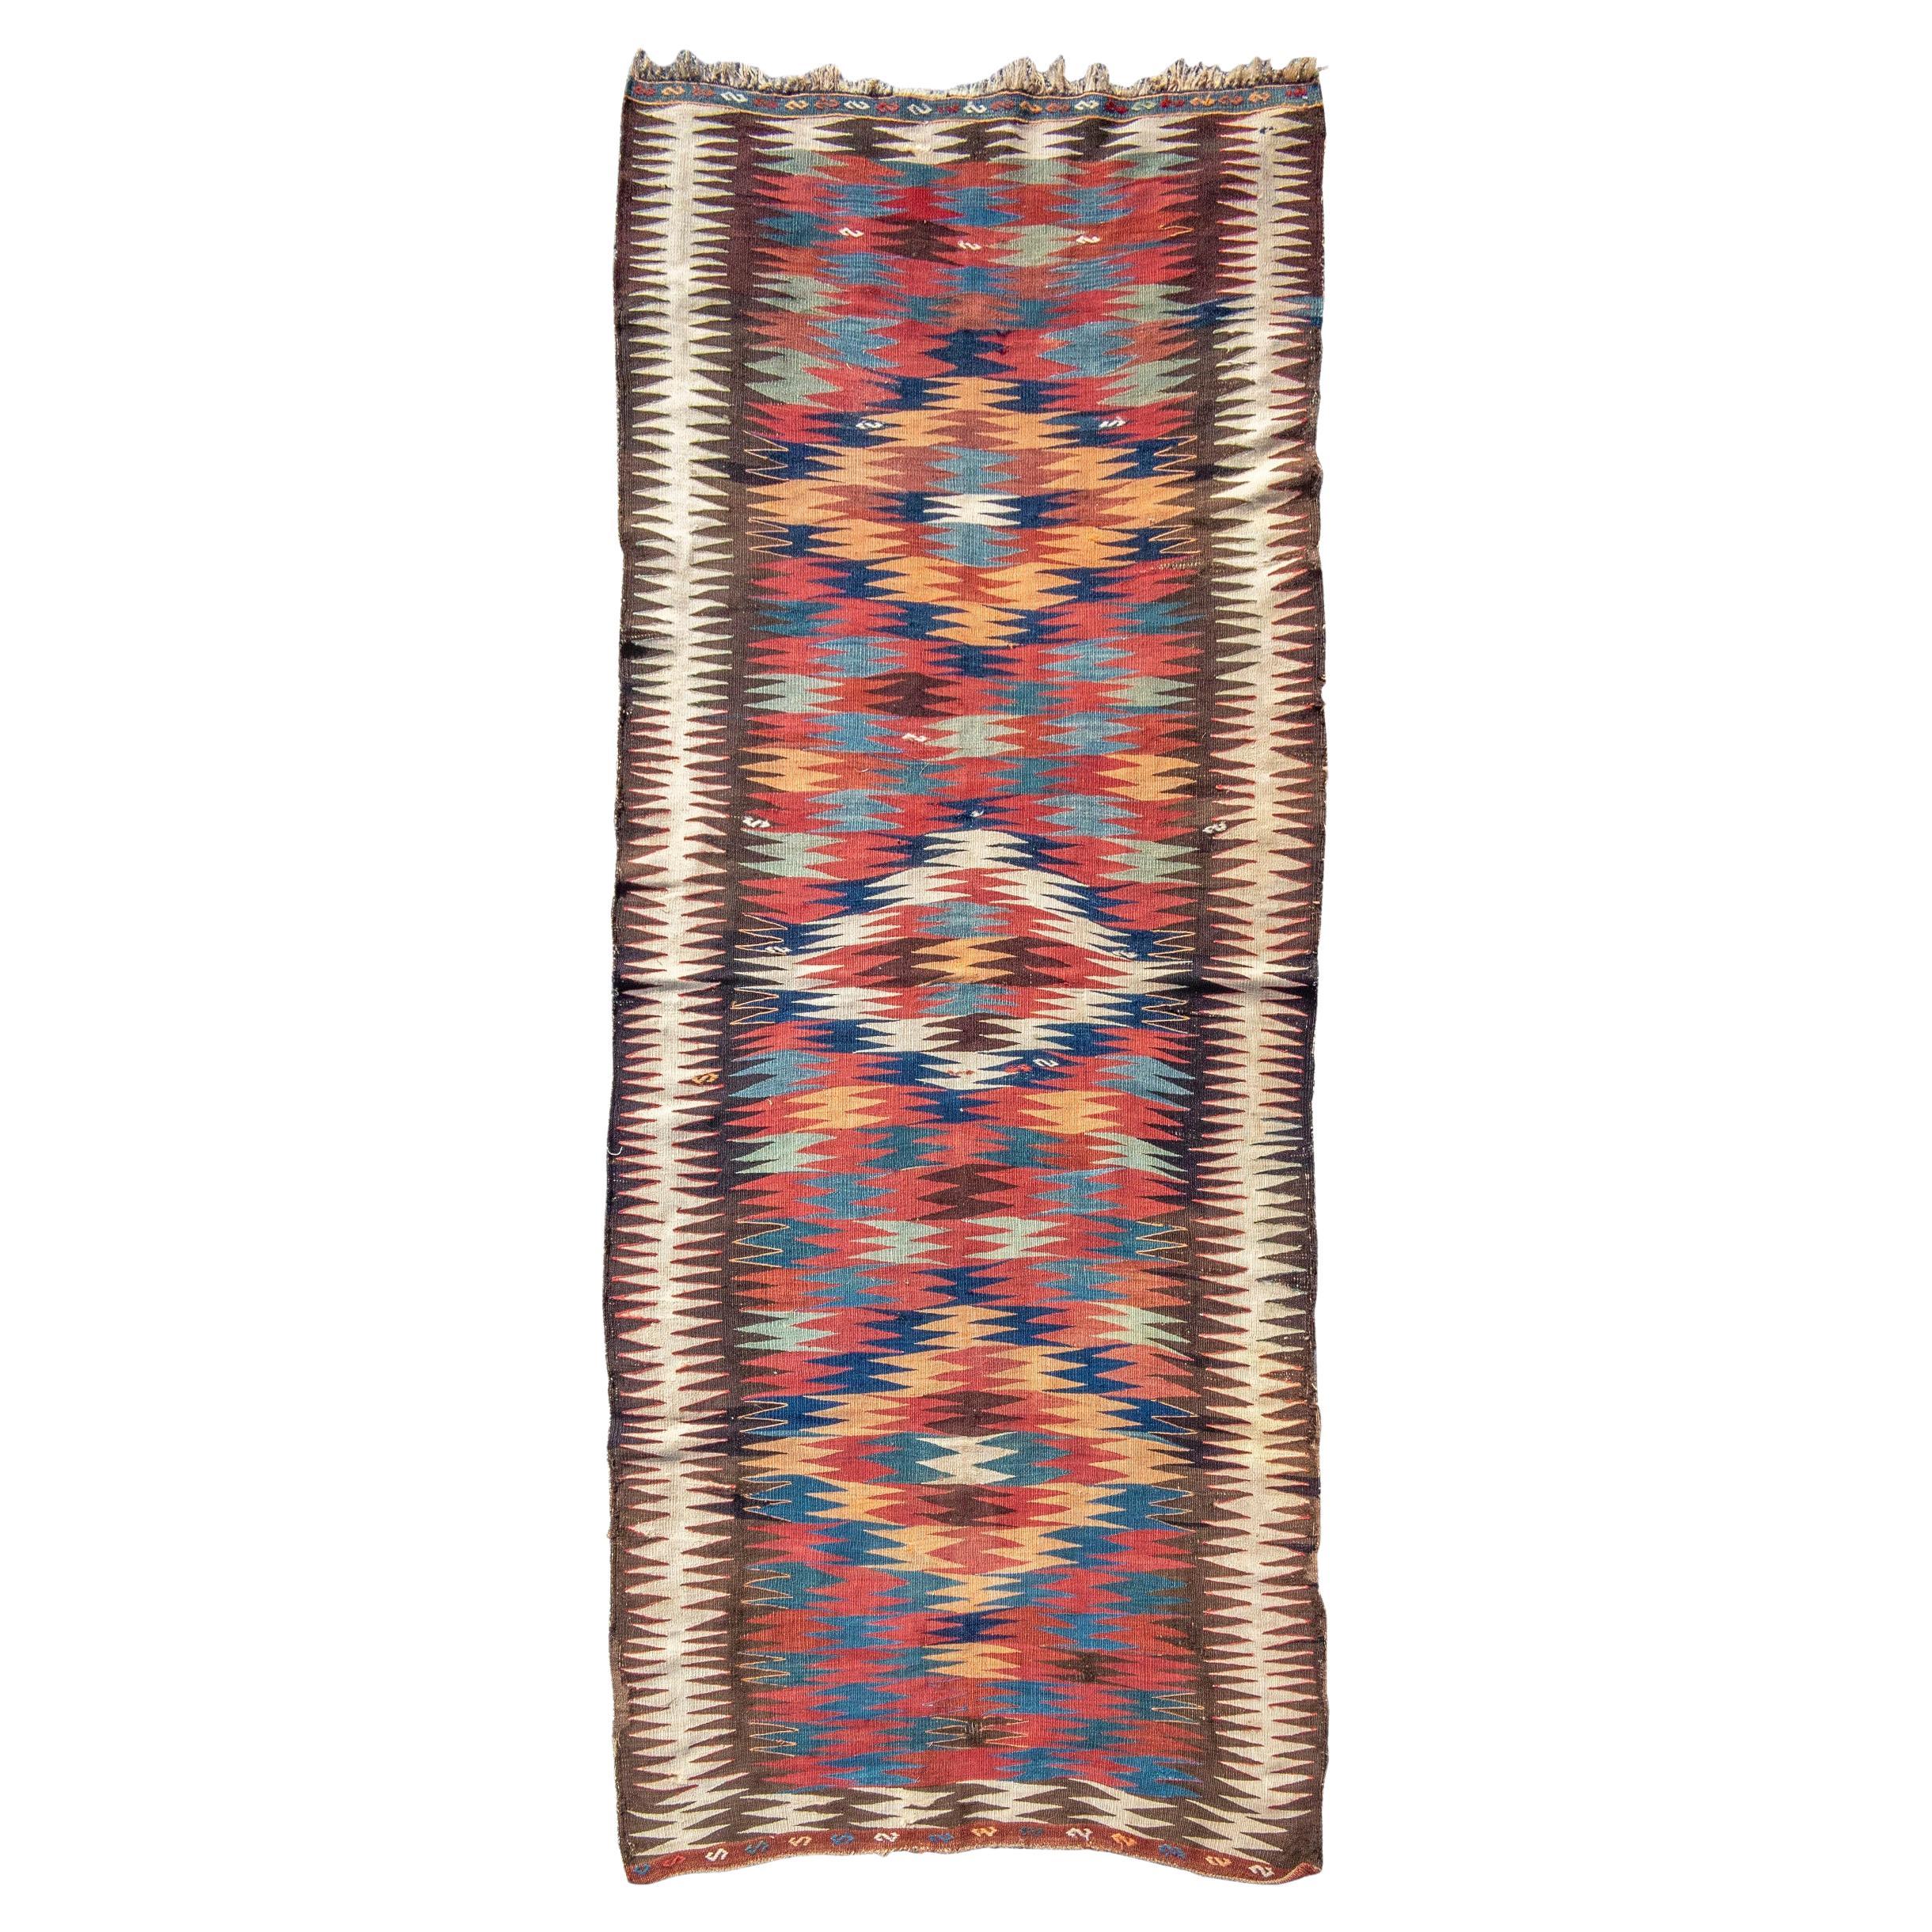 Antique Persian Veramin Kilim Rug, Late 19th Century